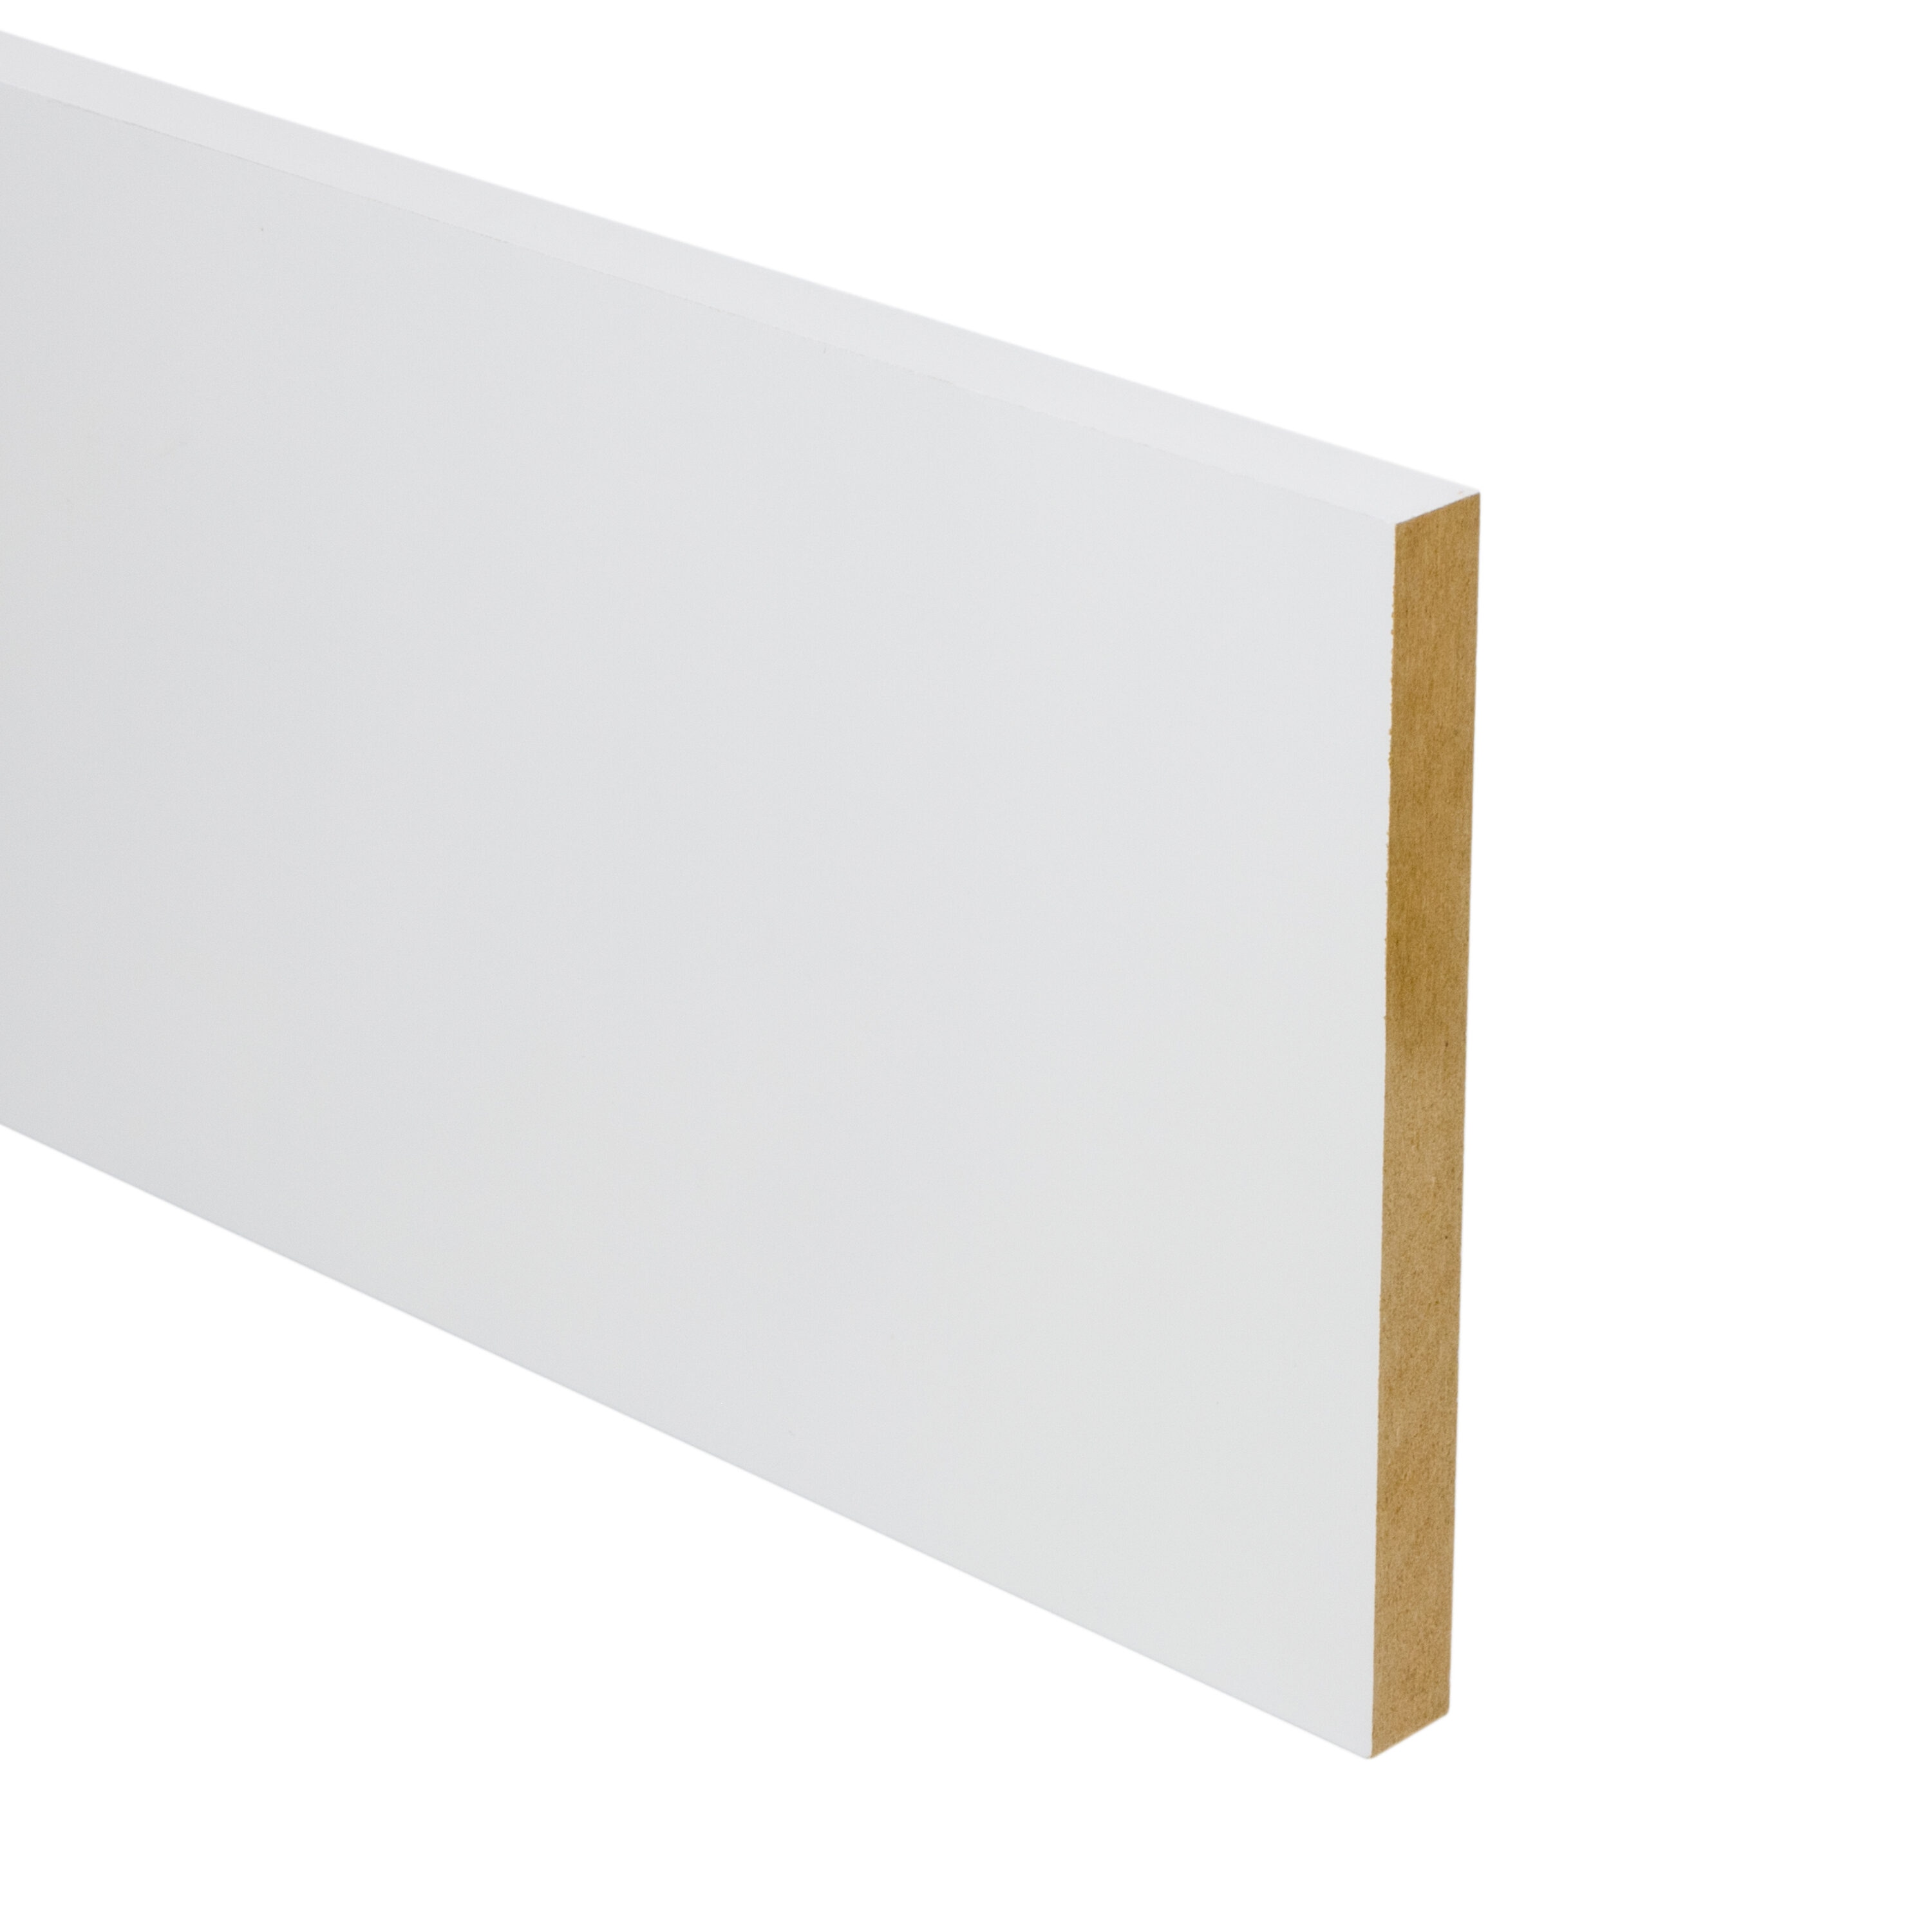 1/8-in x 48-in x 8-ft MDF (Medium-Density Fiberboard) at